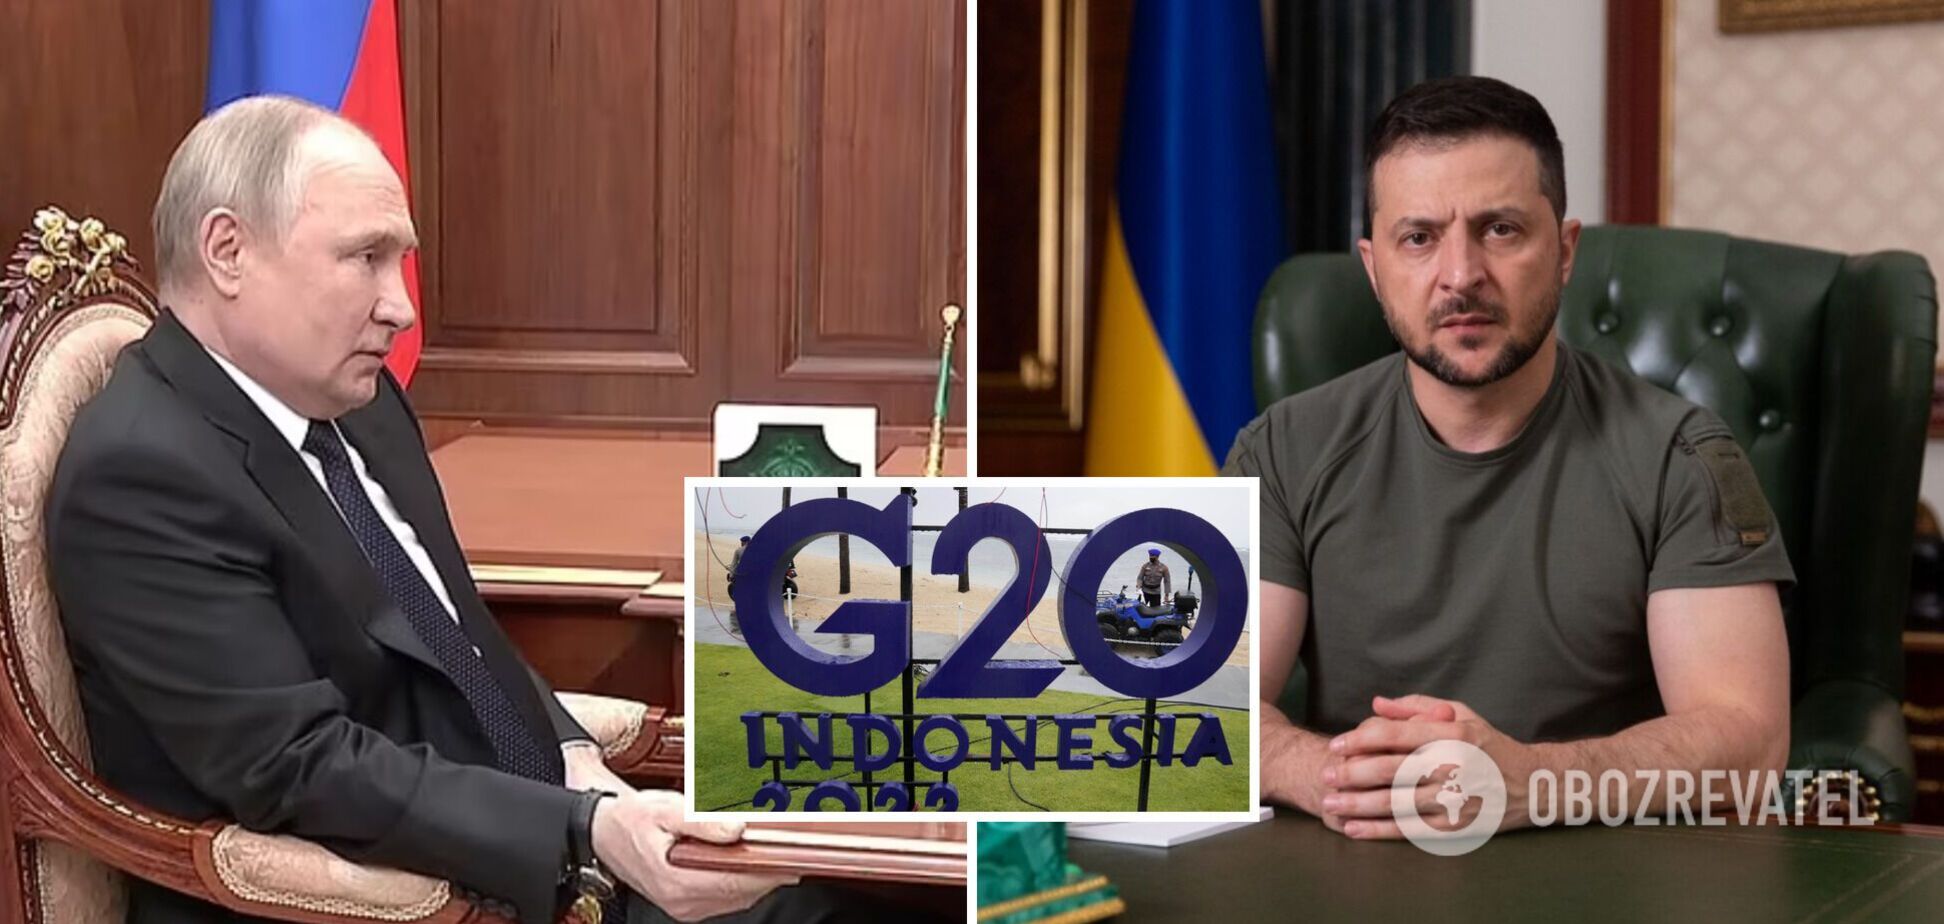  Путін та Зеленський погодилися взяти участь у саміті G20 в Індонезії: в Офісі президента прокоментували інформацію ЗМІ